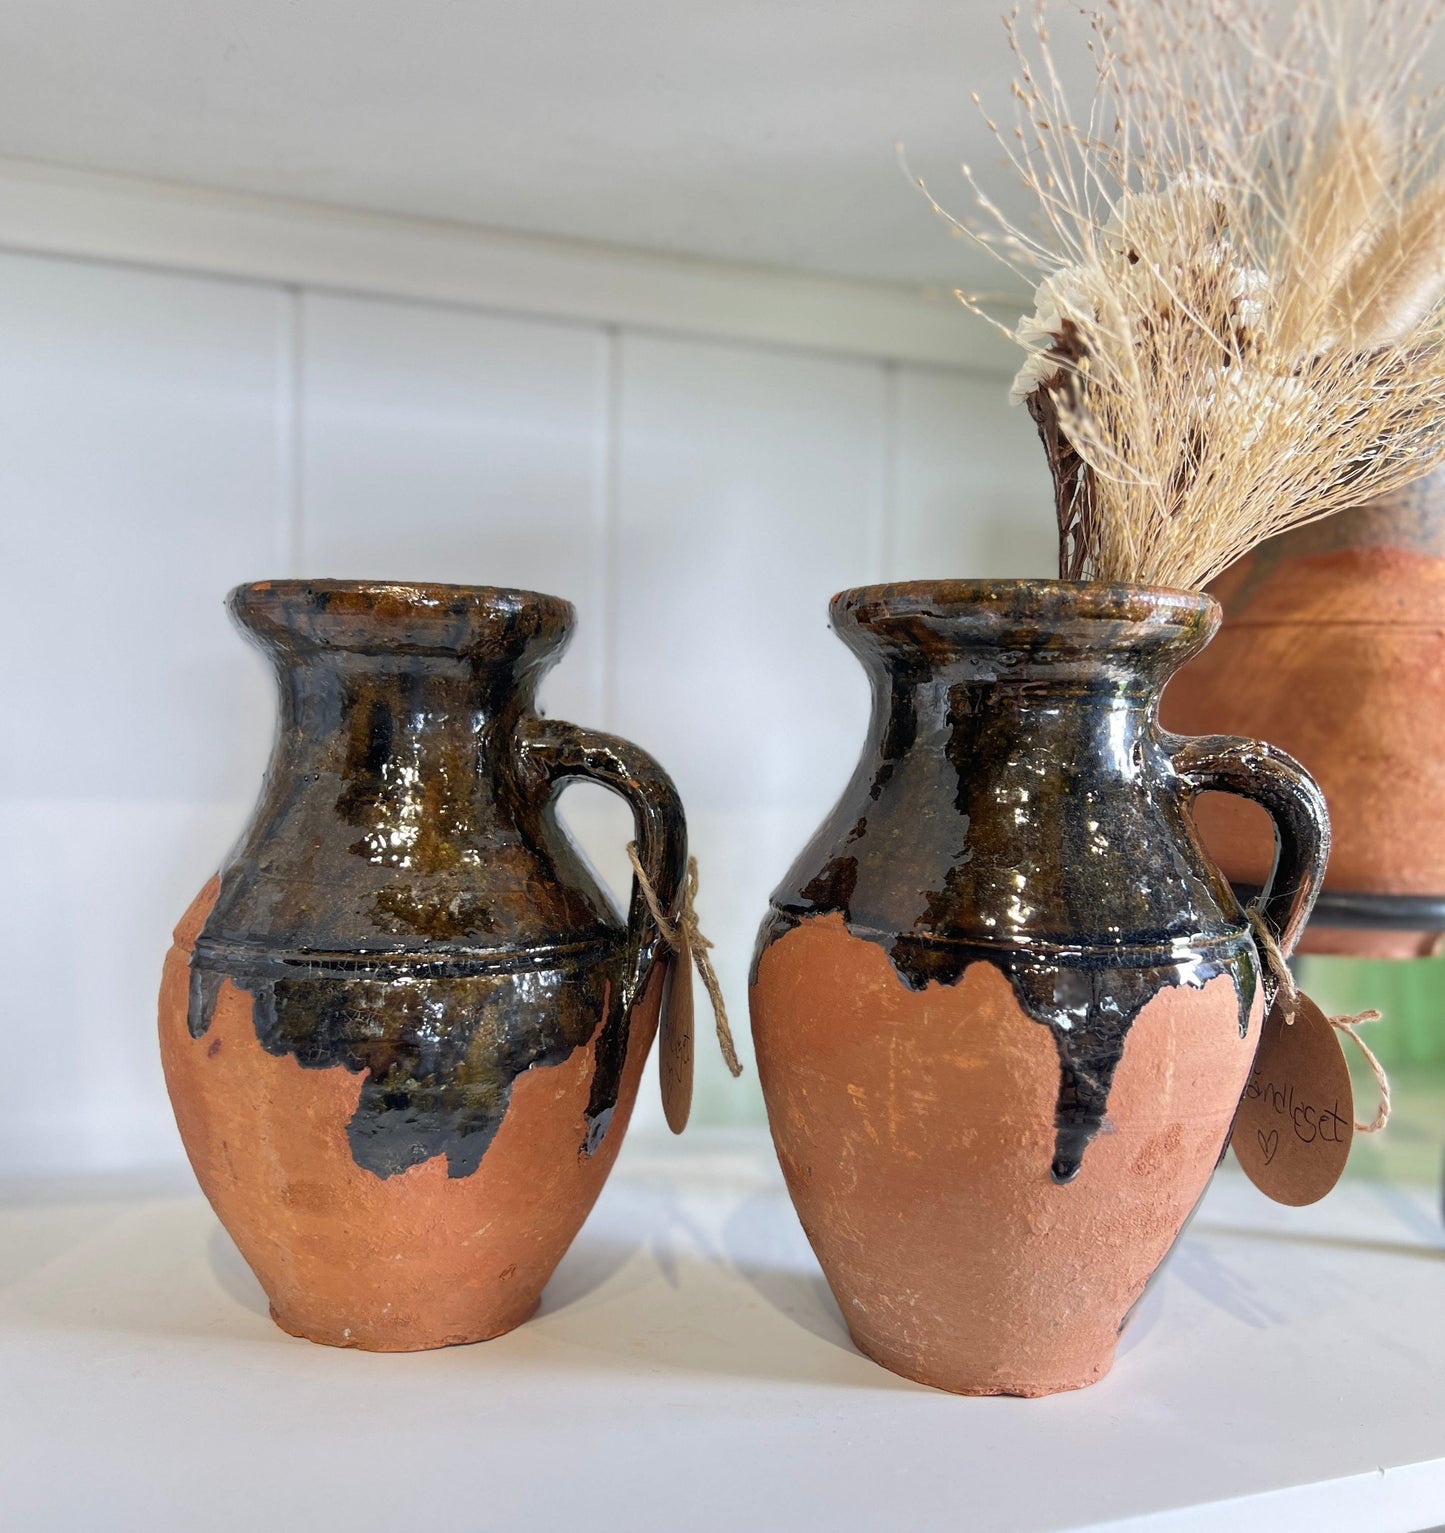 Håndlagede skjønne keramikk vaser med håndtak. Disse er glasert eller farget oventil for å få en helt unik stil. Bruk de til bestikket i kjøkkenet, tørkede blomster og i et stilleben.